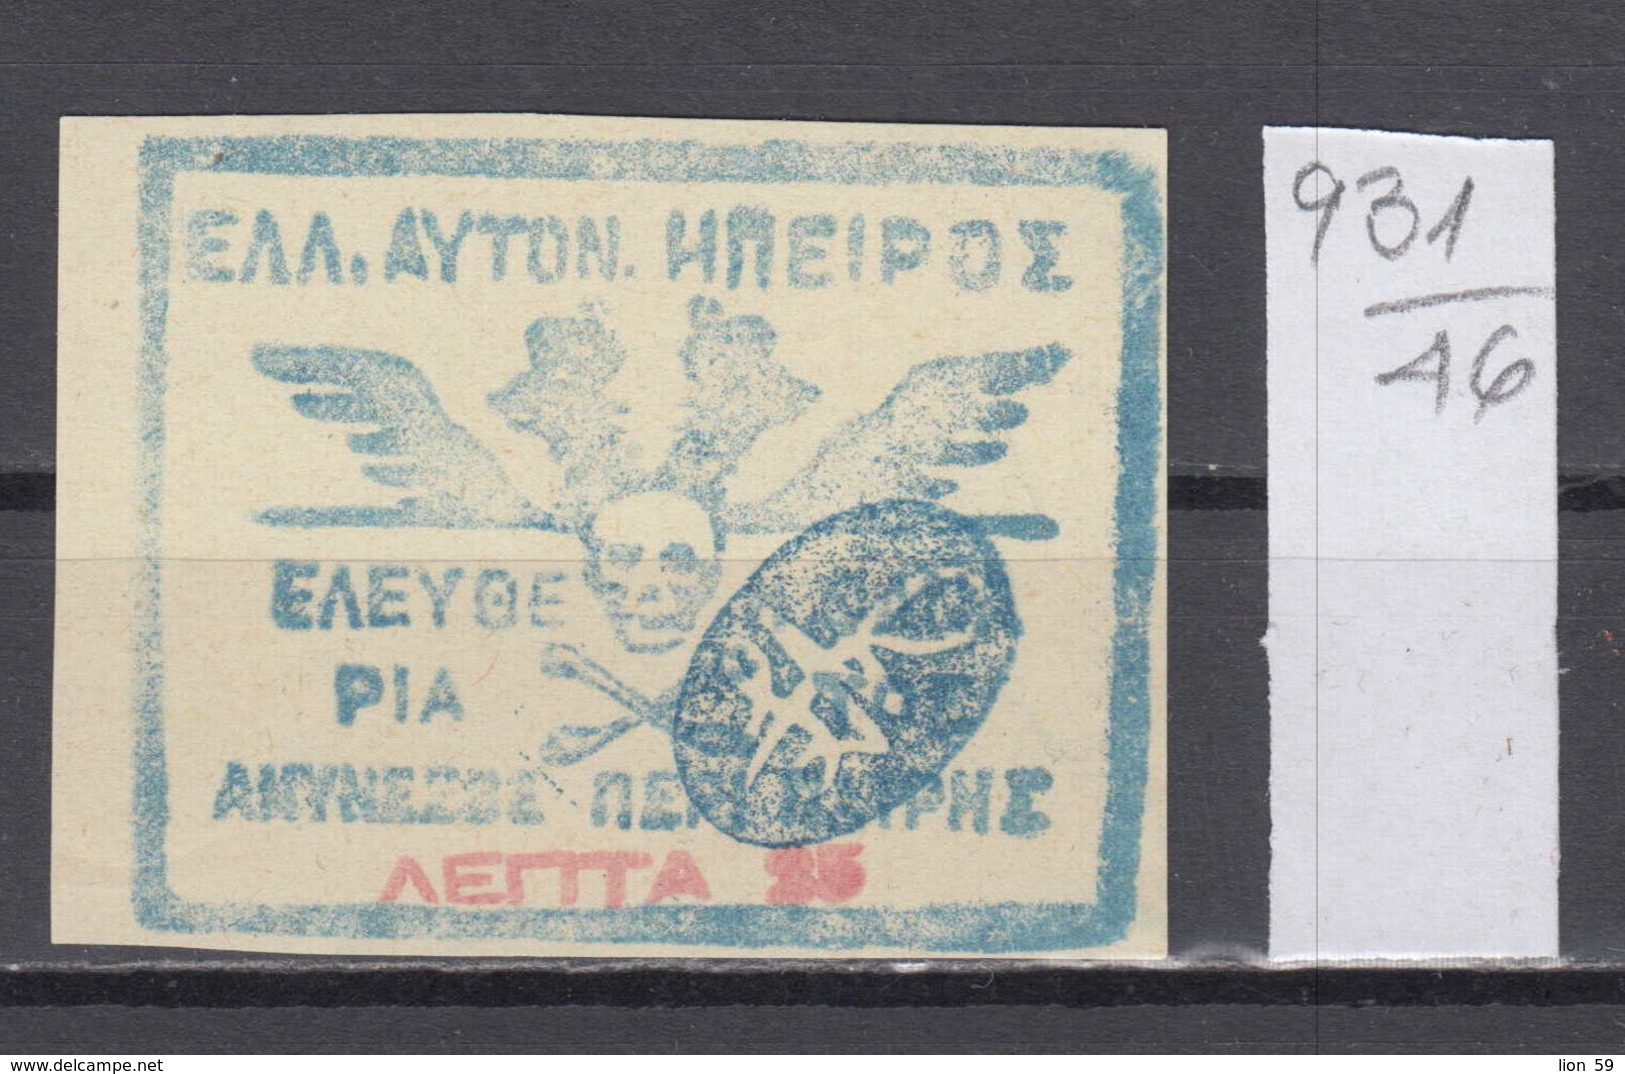 46K931 / 1914 - Michel Nr. 4 - Epirus Chimarra No Certificate, Not Used (* Not Gum ) Greece Grece Griechenland - Epirus & Albanie